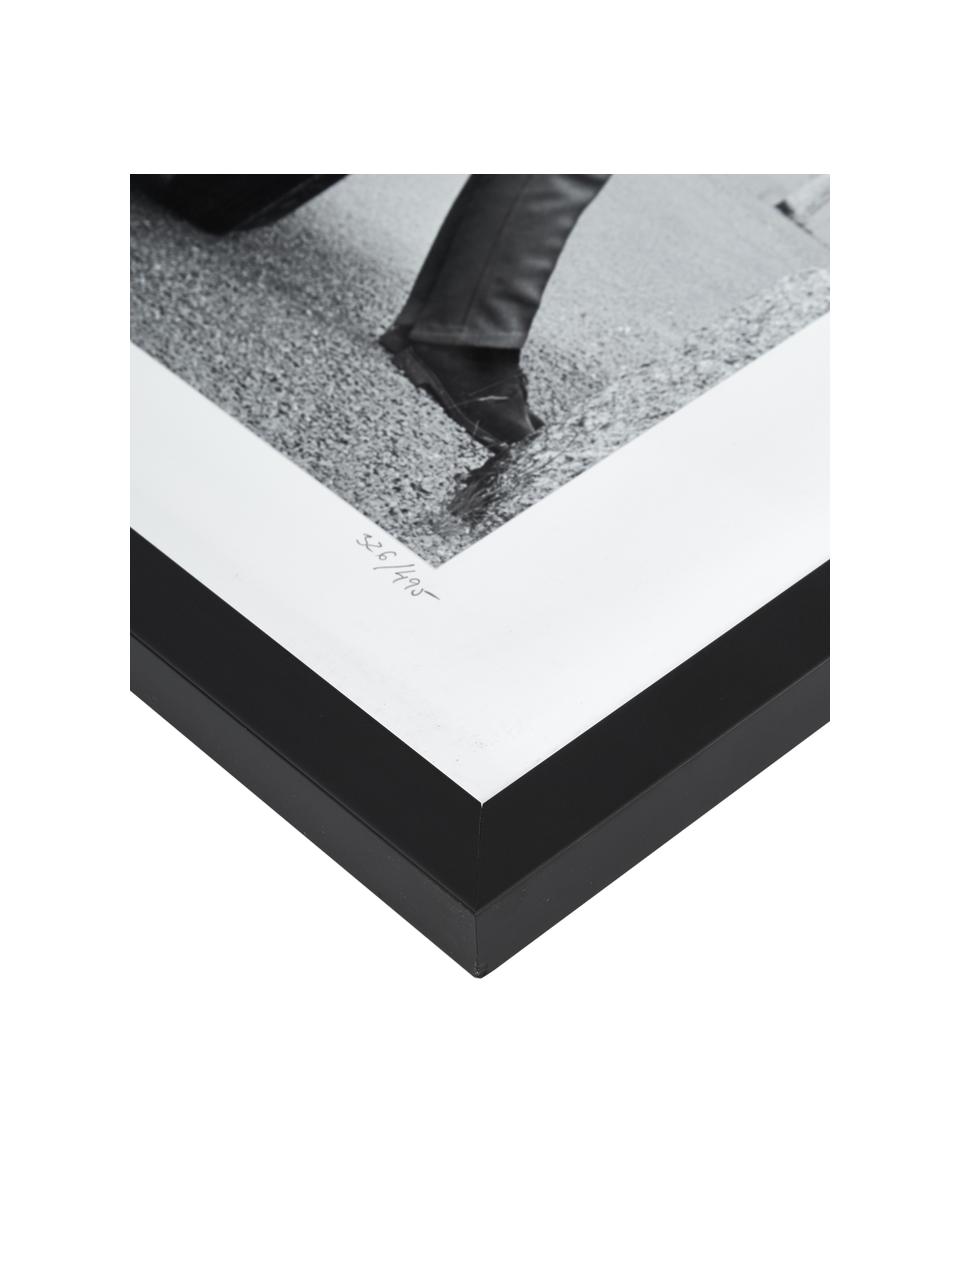 Stampa fotografica incorniciata Connery, Immagine: carta Fuji Crystal Archiv, Cornice: plexiglass, legno vernici, Nero, bianco, L 40 x A 50 cm